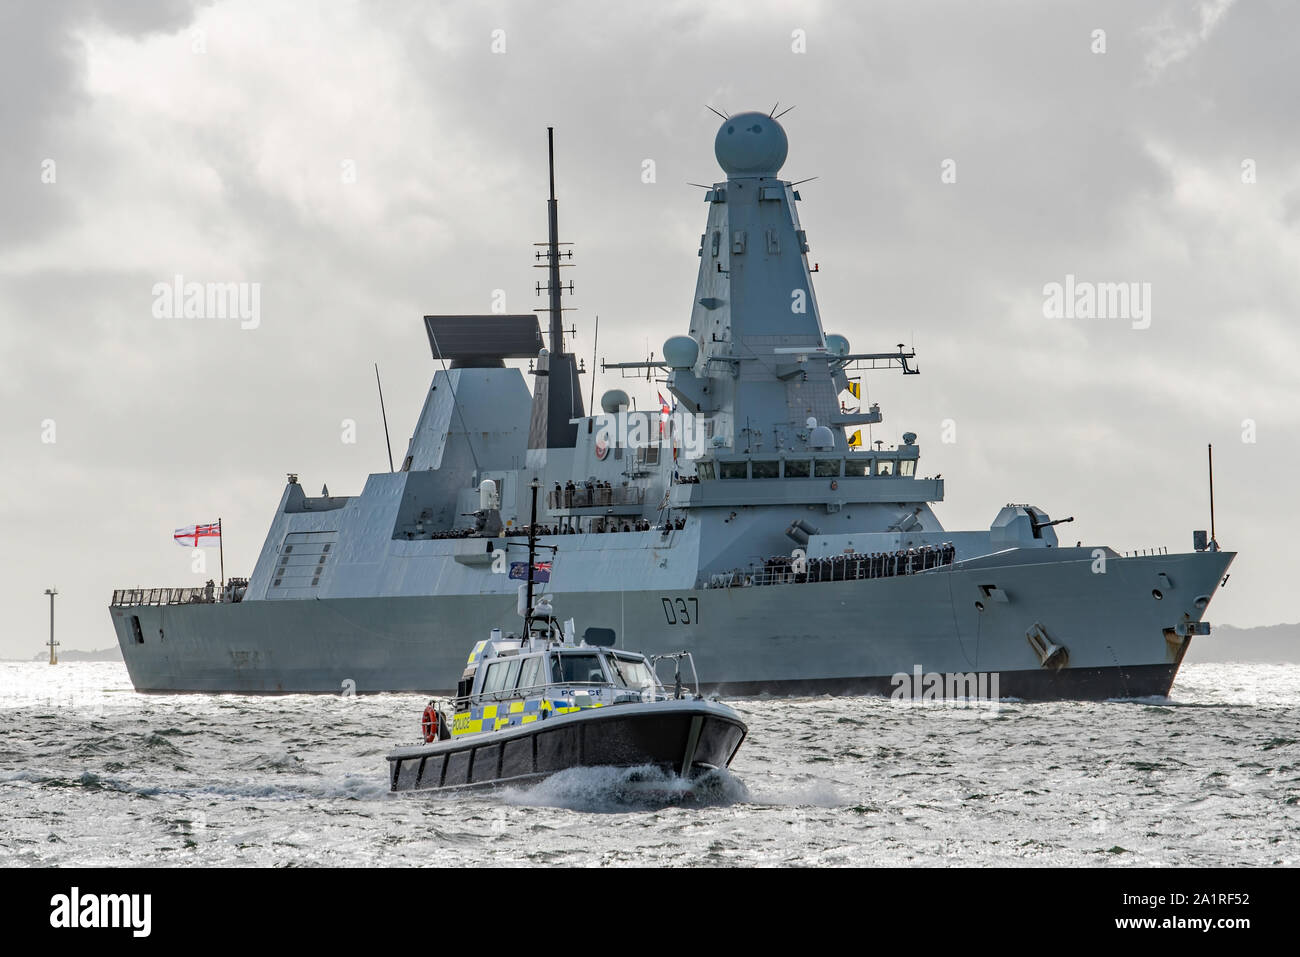 La Royal Navy navire de guerre HMS Duncan (D37) retour du front à Portsmouth, Royaume-uni le 28/9/19 après un long déploiement au Moyen-Orient et Golfe Persique. Banque D'Images